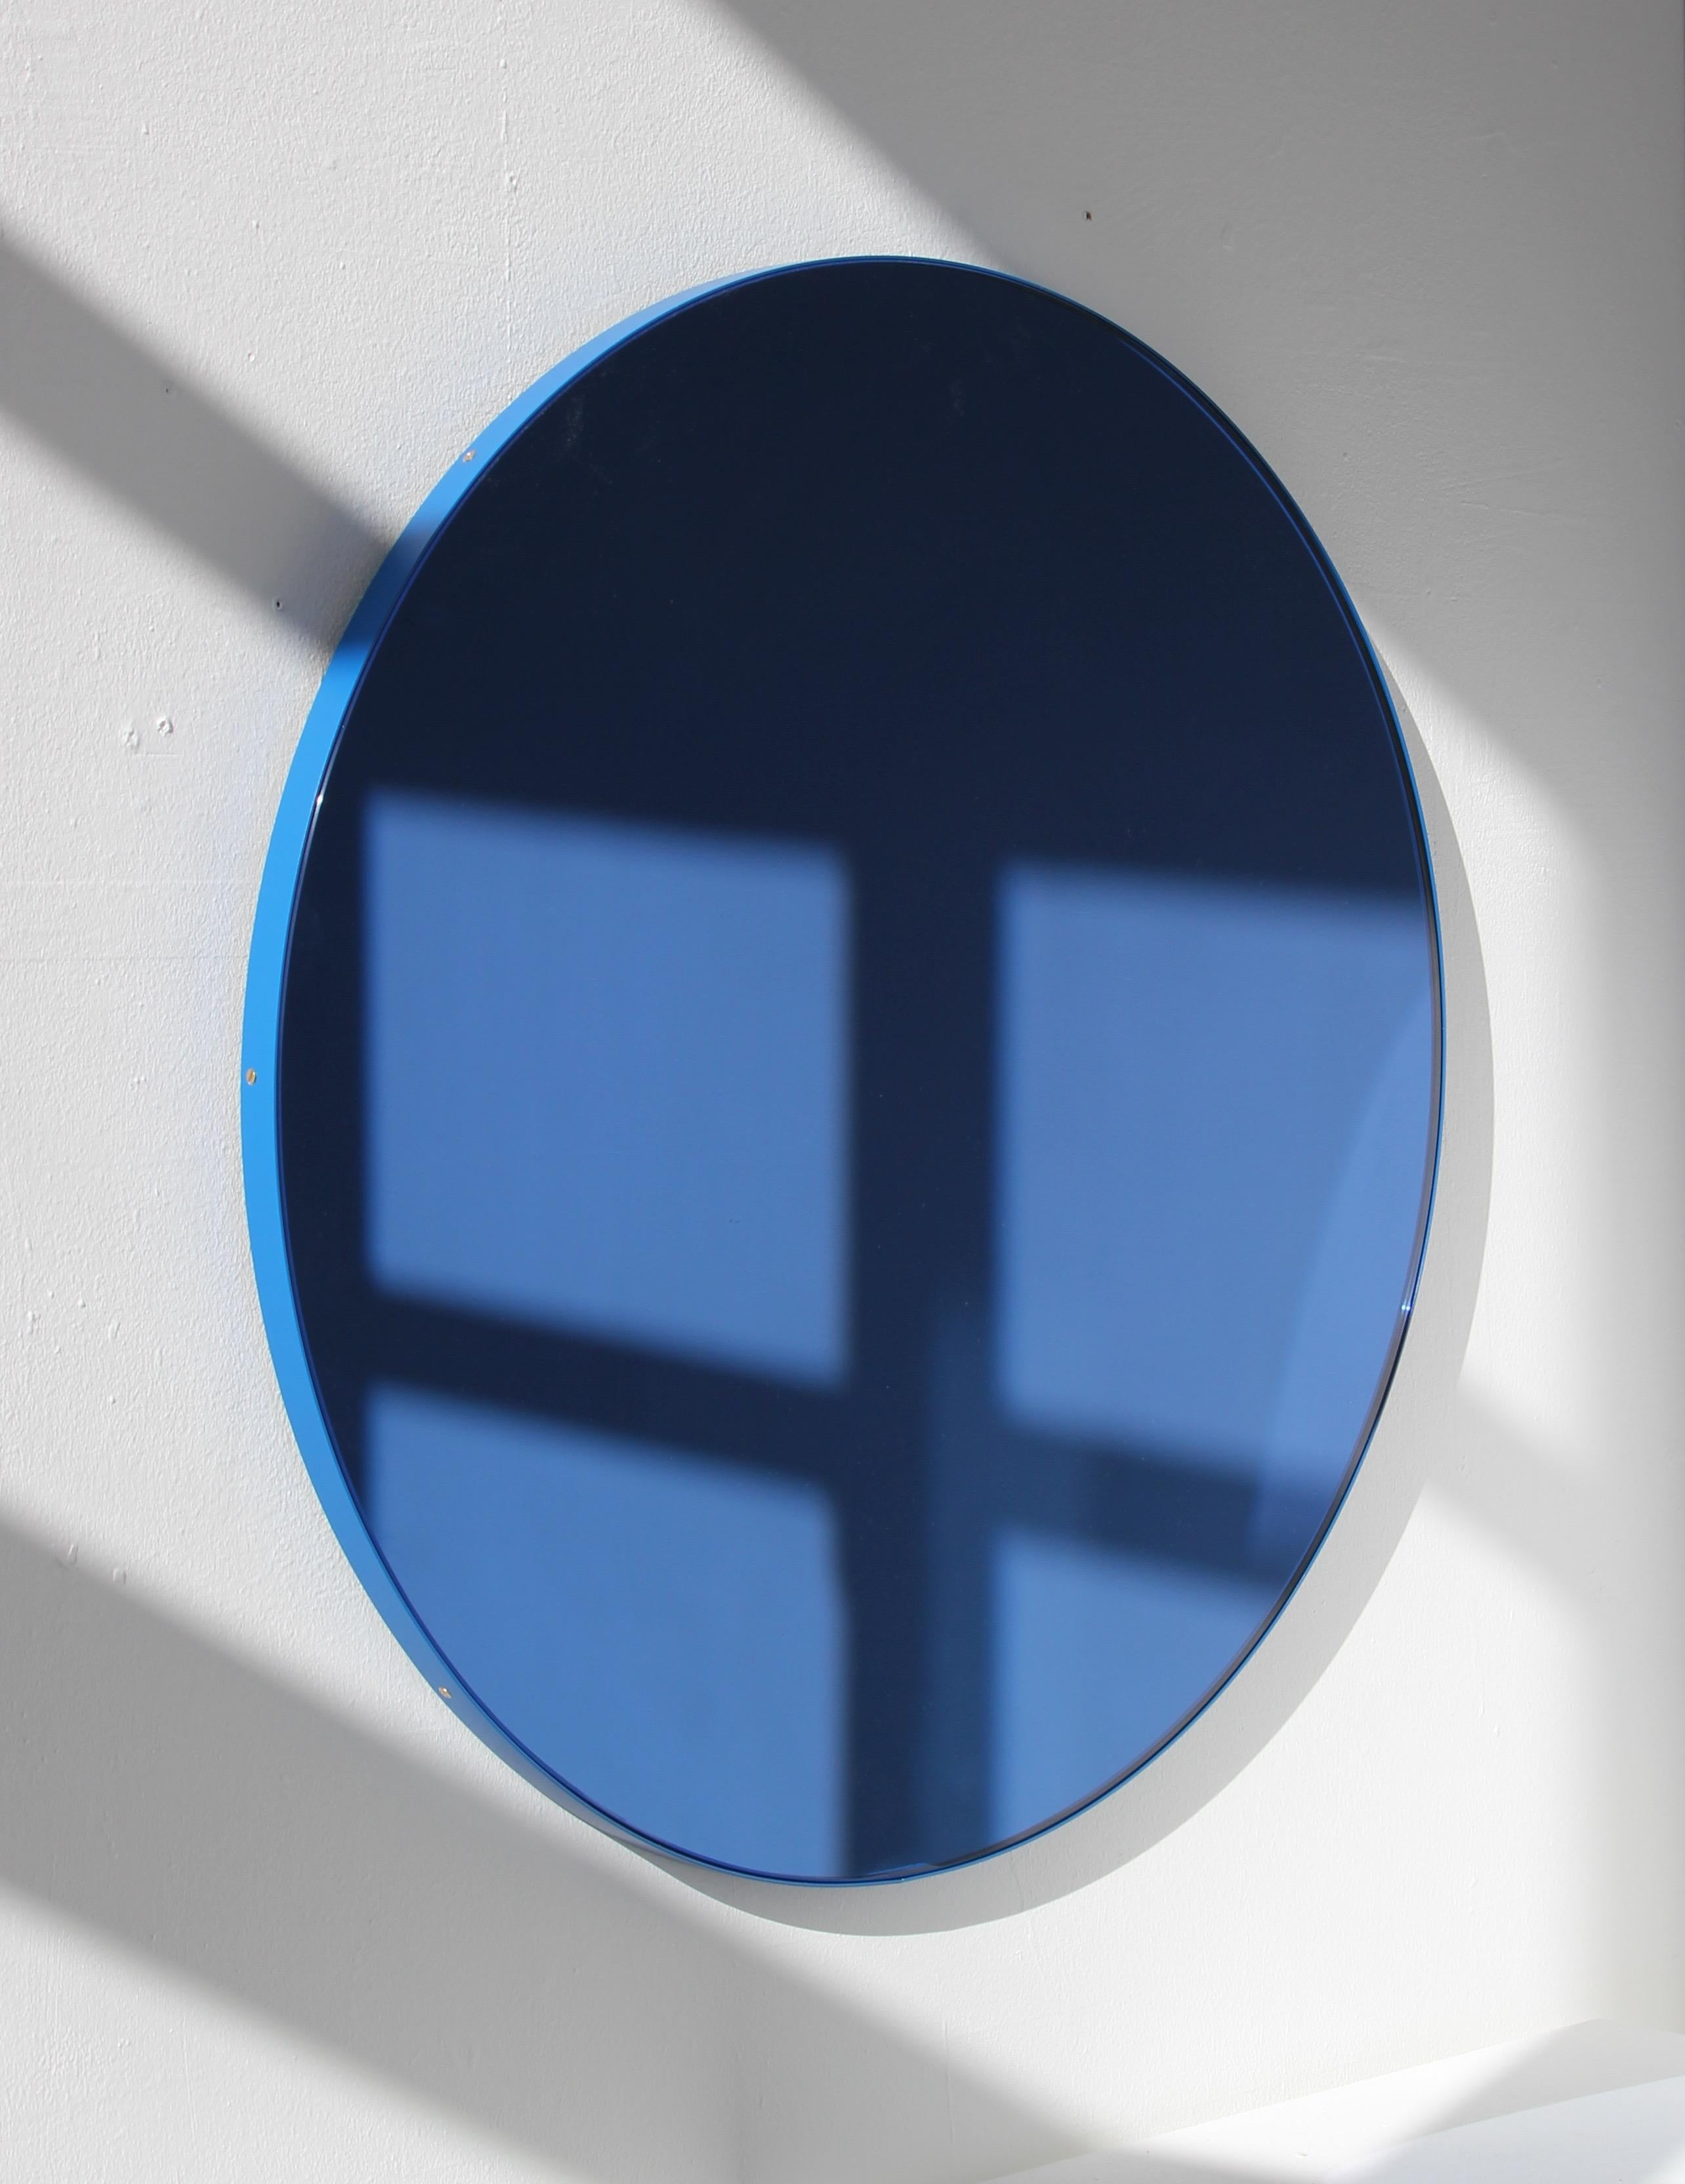 Miroir rond contemporain teinté bleu avec un cadre en aluminium peint par poudrage bleu. Conçue et fabriquée à la main à Londres, au Royaume-Uni.

Nos miroirs sont conçus avec un système intégré de tasseaux français (lattes fendues) qui garantit que